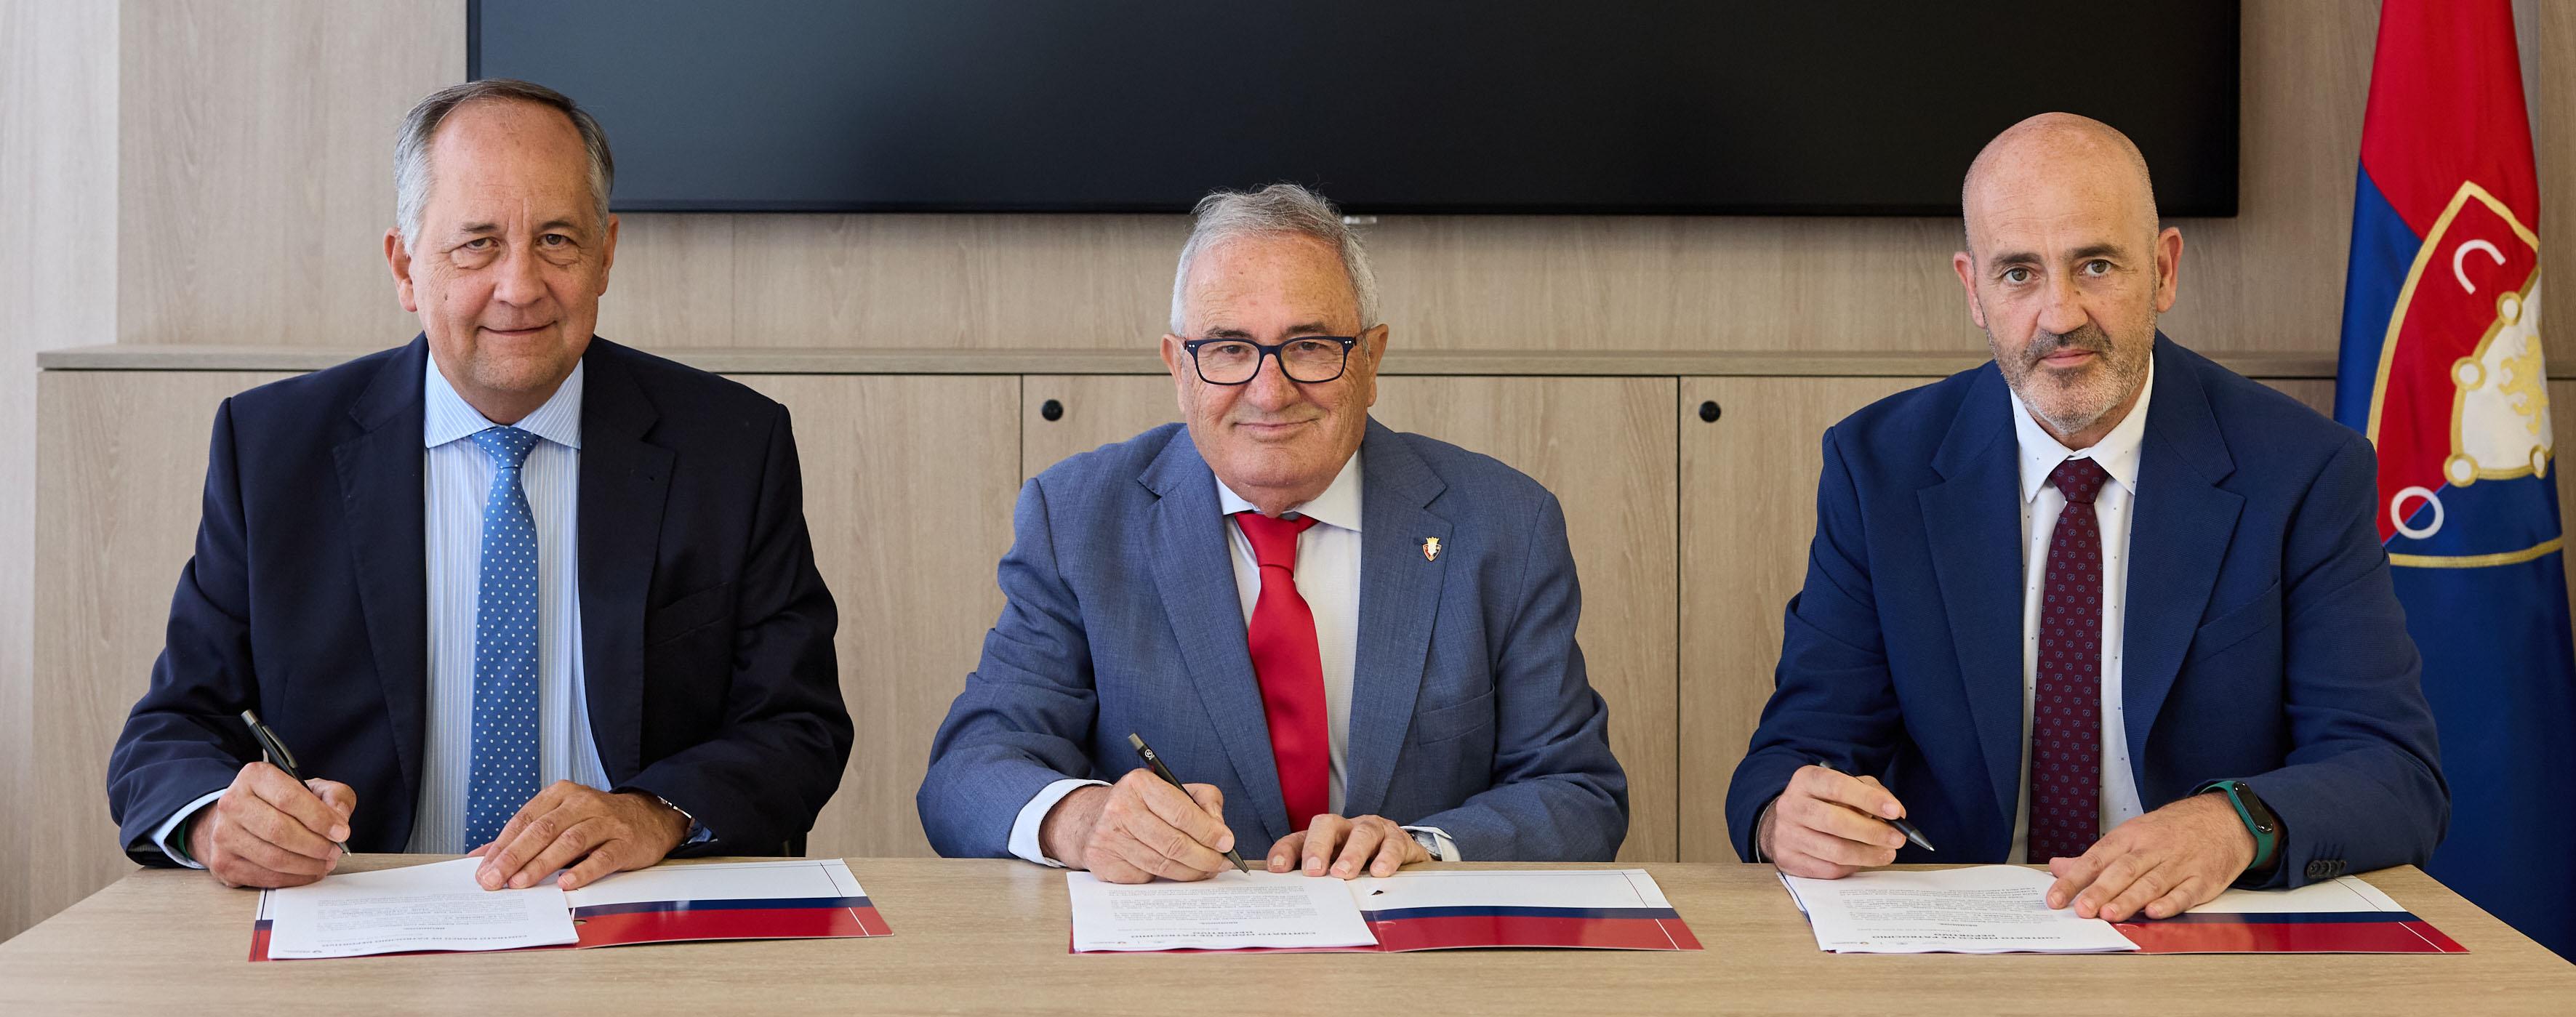 El Club Atlético Osasuna alcanza un acuerdo de patrocinio con Toyota Tauro Motor y Lexus Pamplona